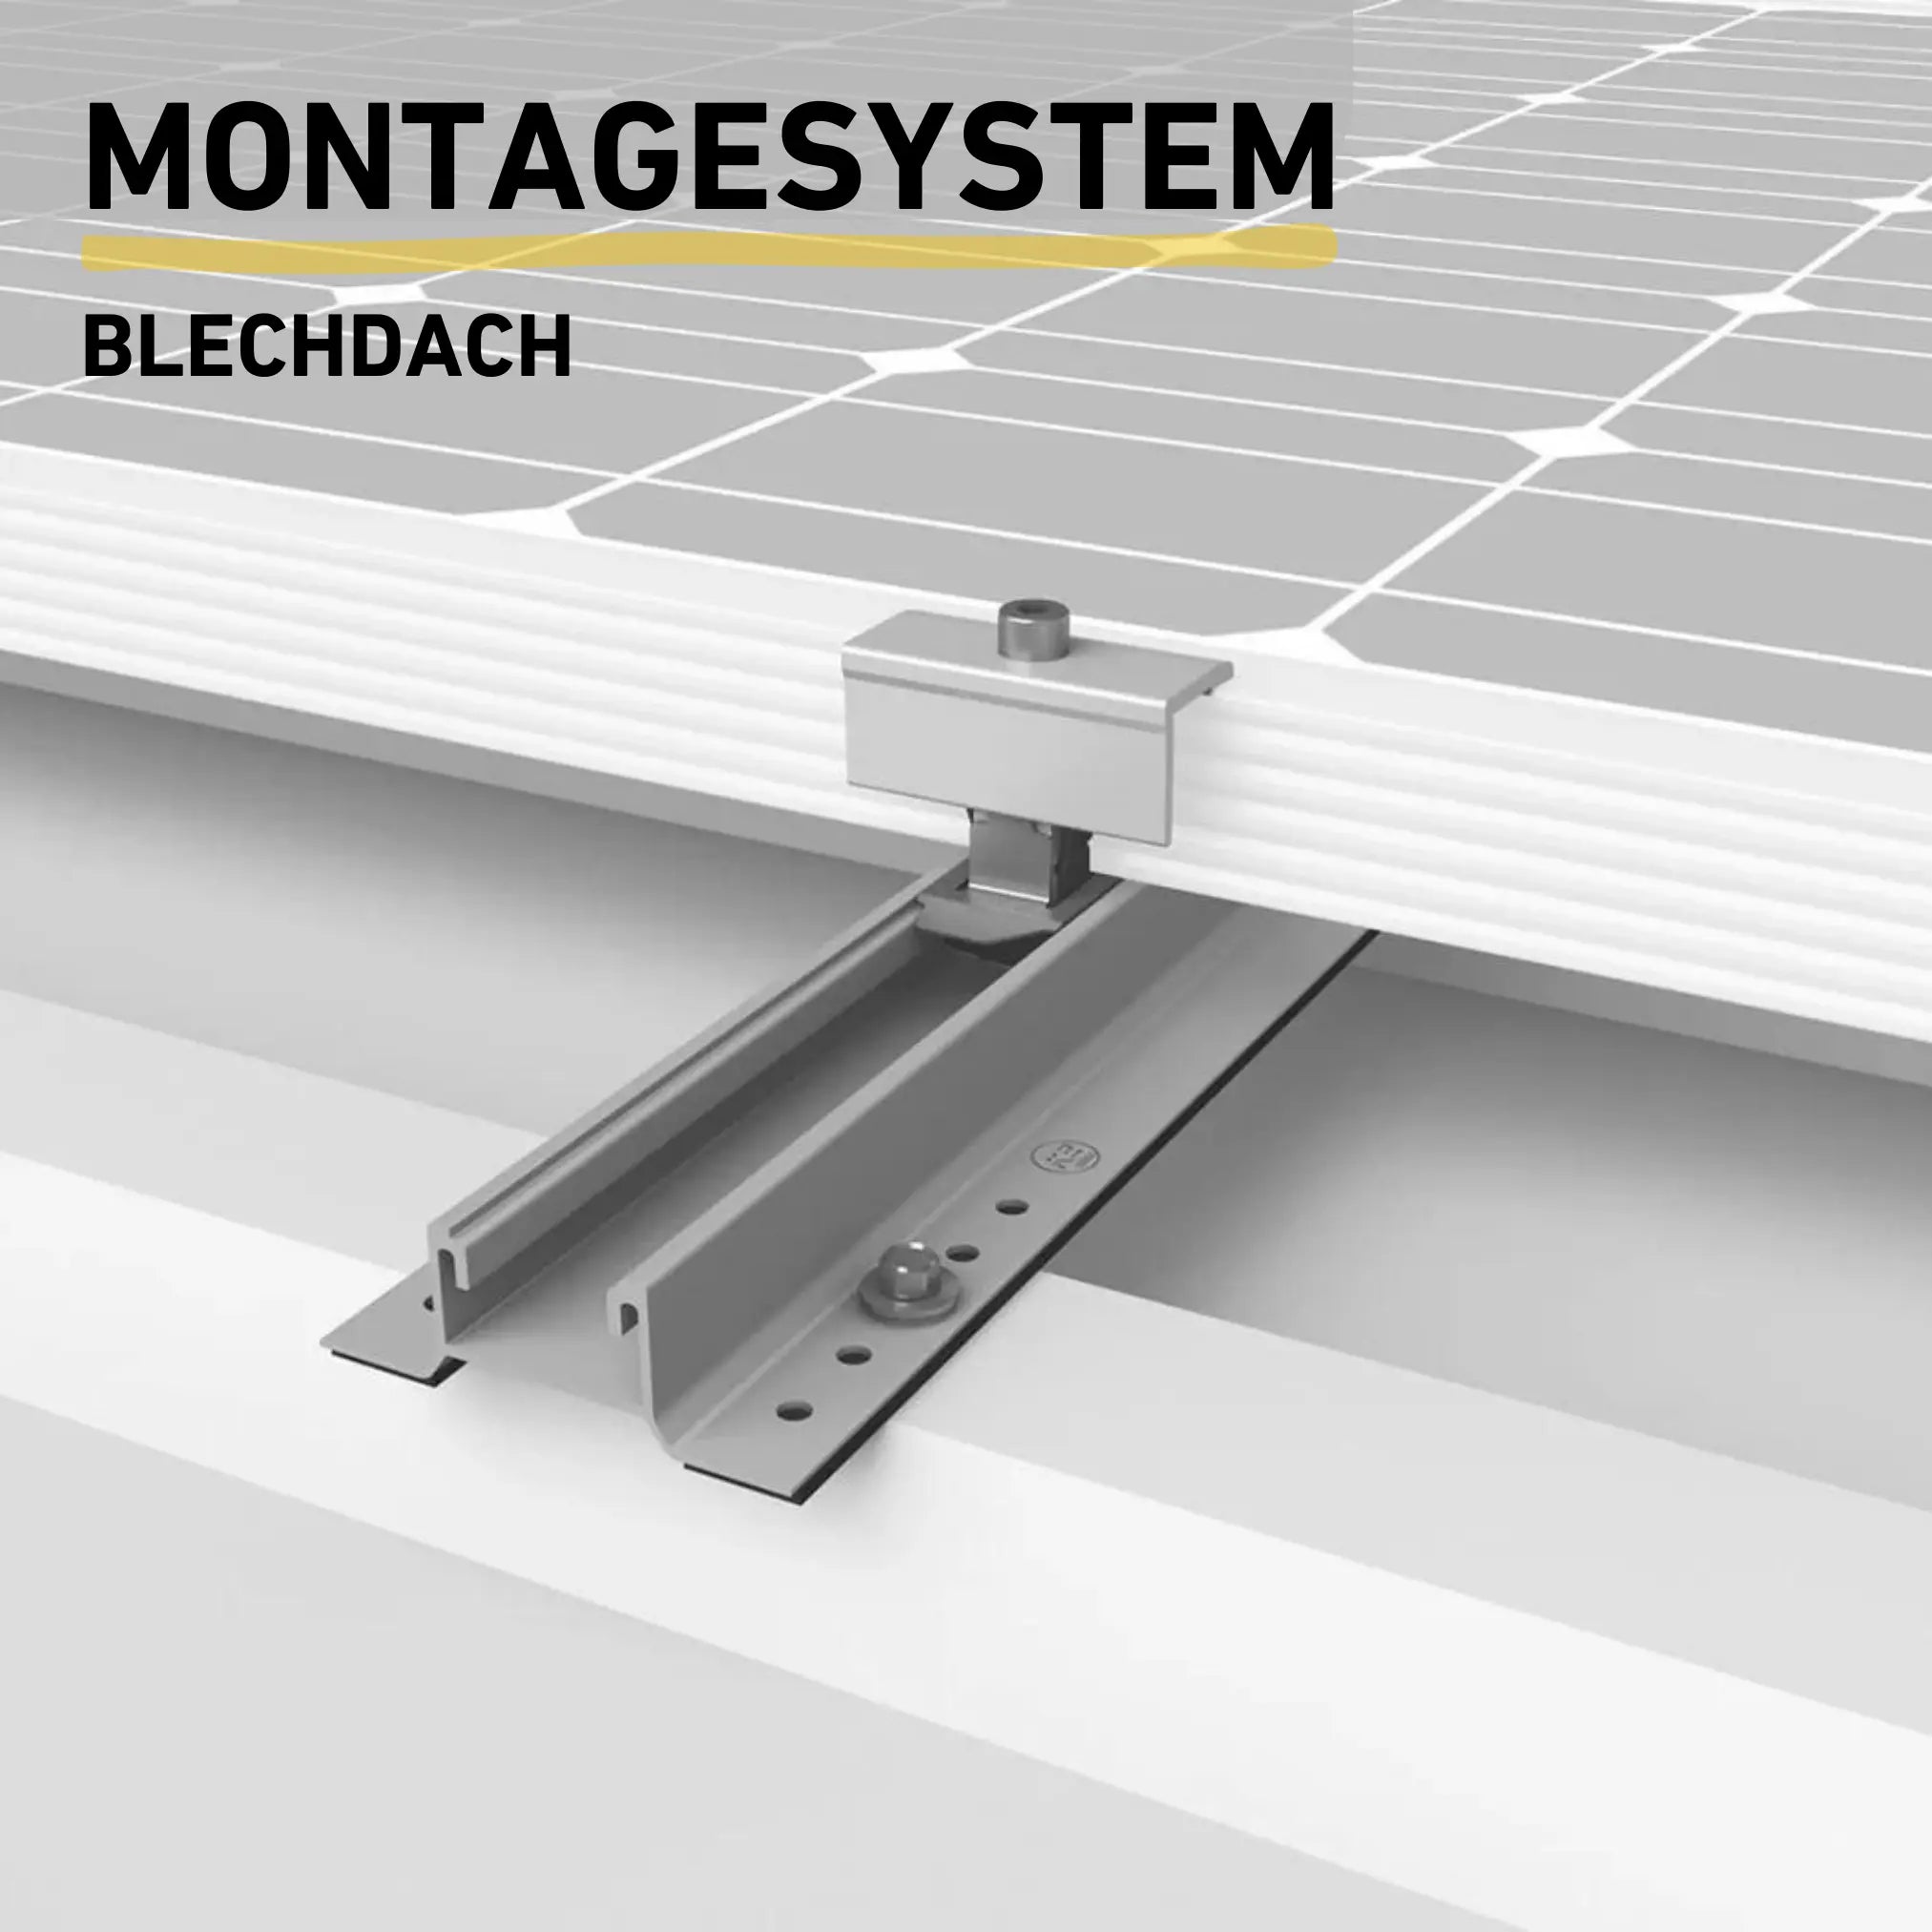 Balkonkraftwerk Montagesystem Blechdach Produktbild Darstellung